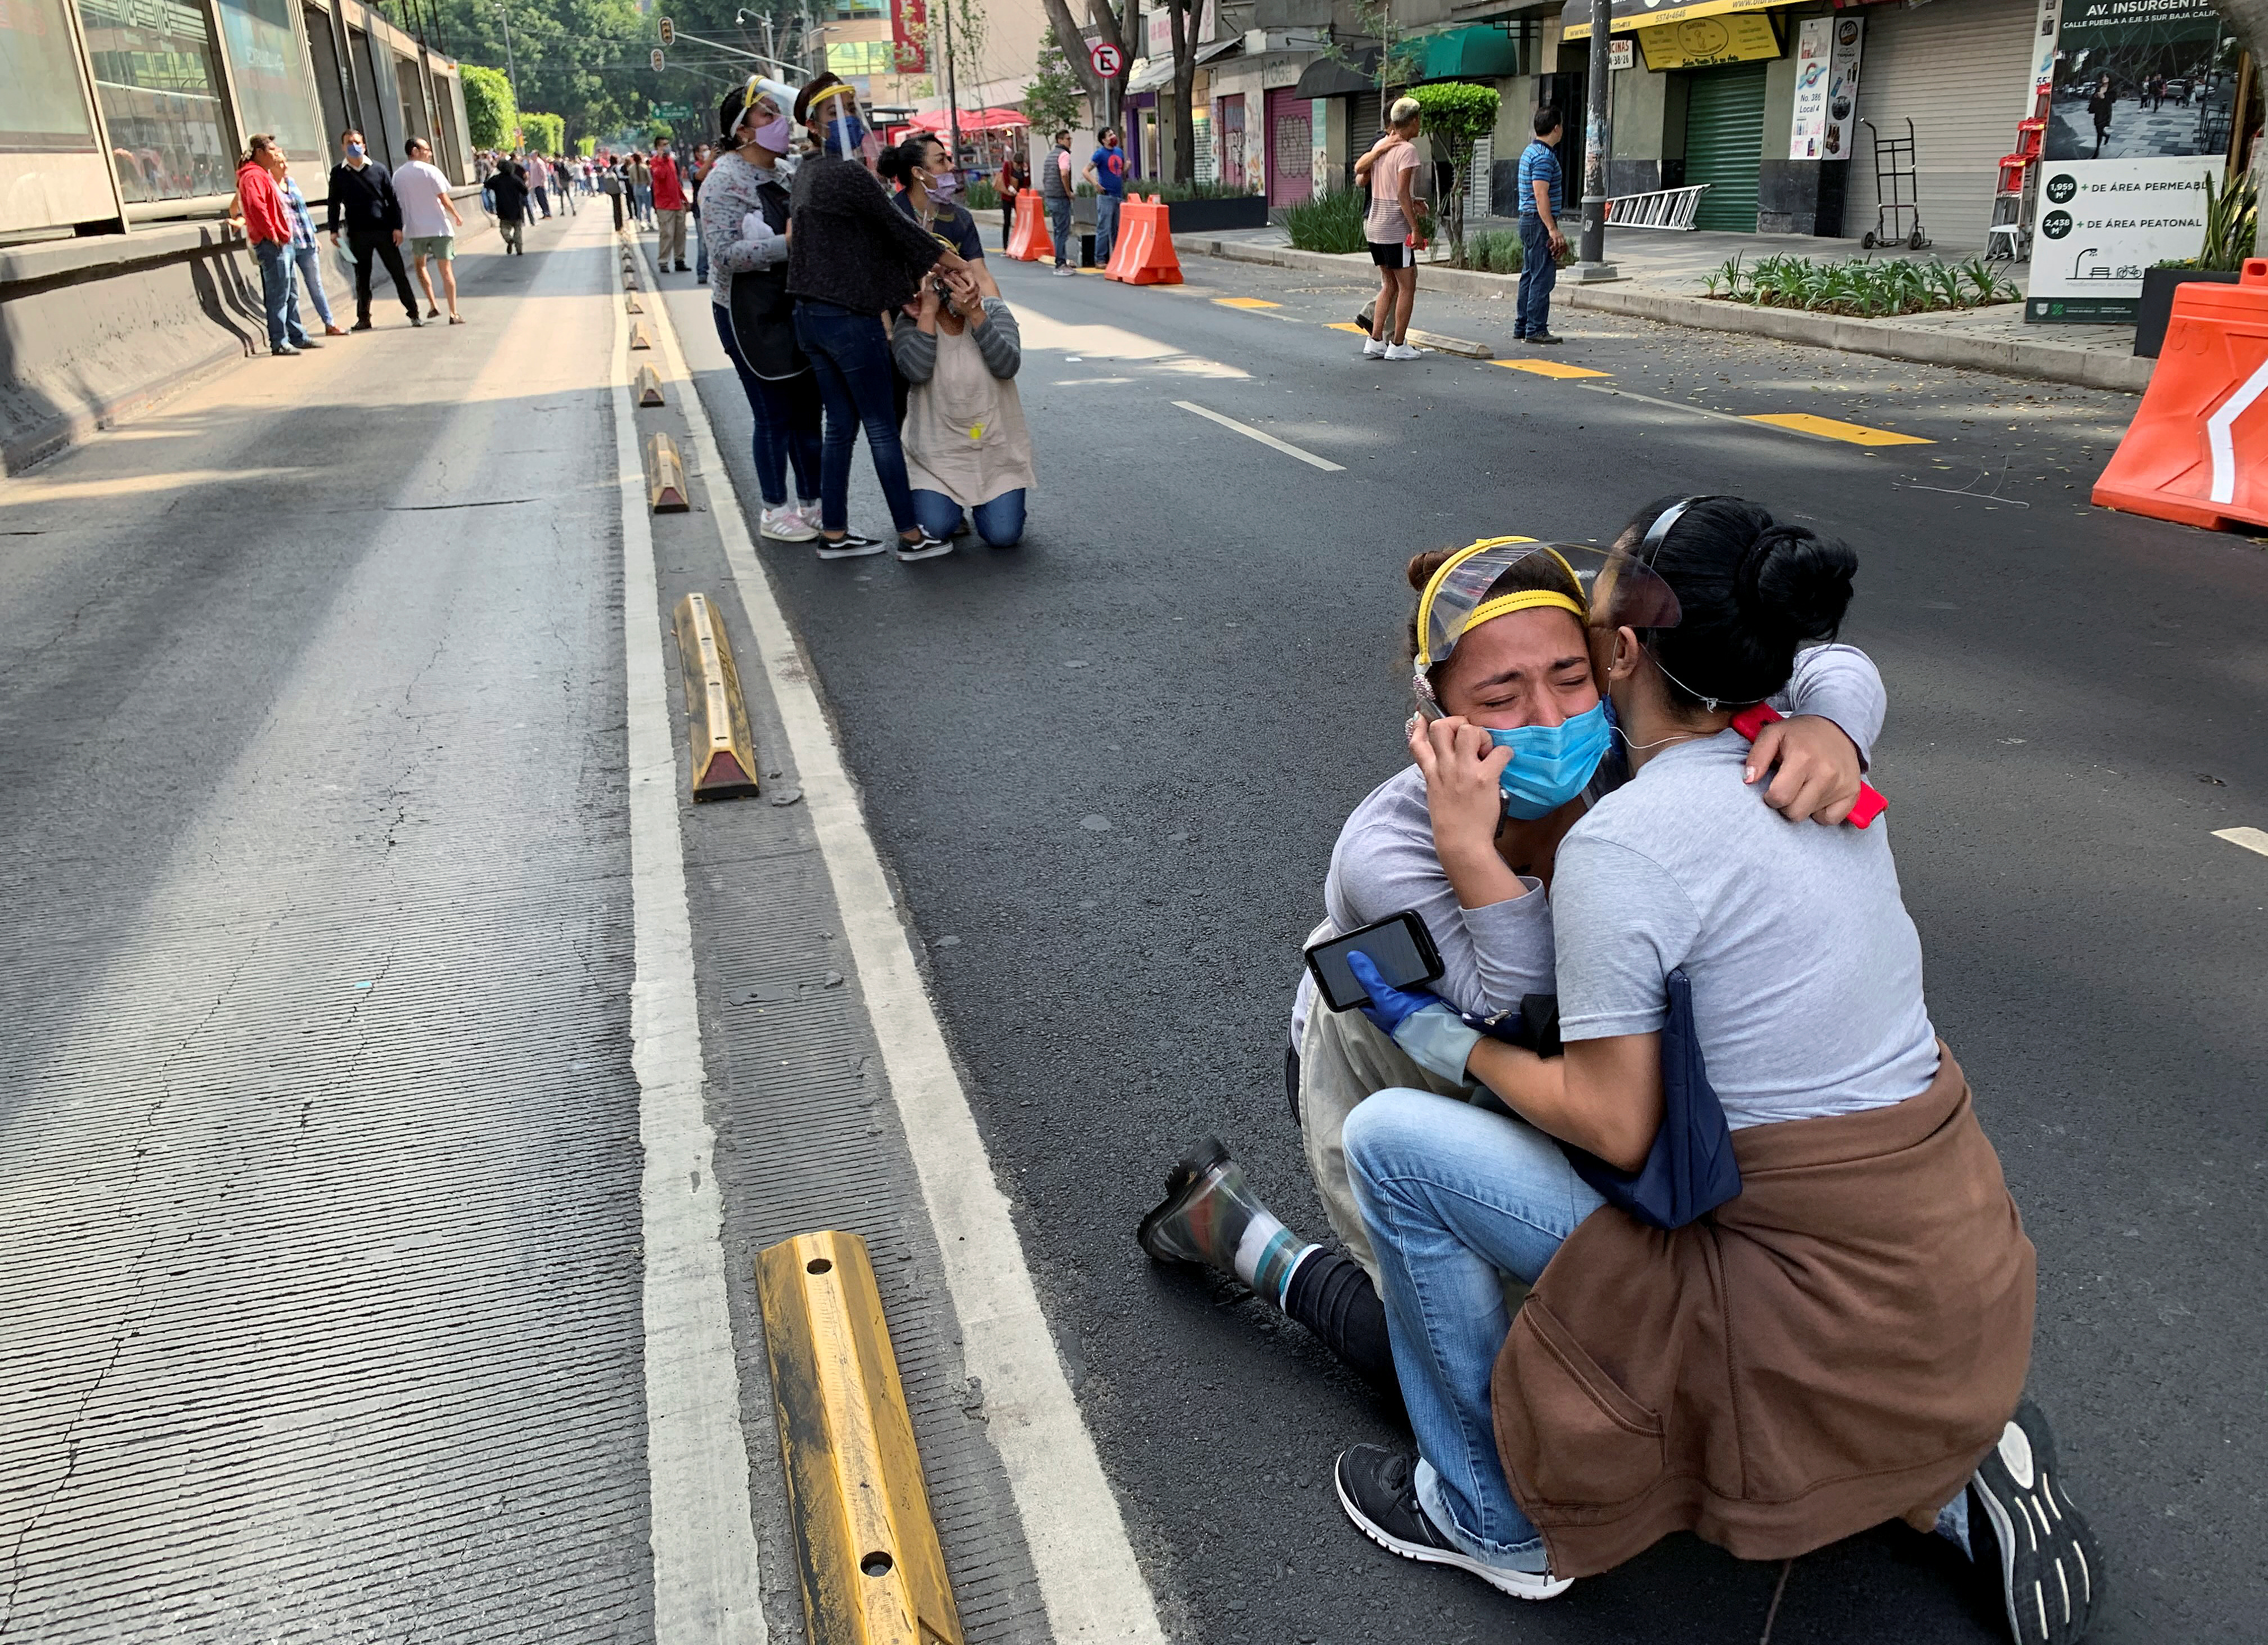 Dos amigas se abrazan en Ciudad de México tras el sismo en Oaxaca. El recuerdo de los tres sismos de 2017, en los que murieron 471 personas, permanece en la memoria de los mexicanos (REUTERS/Tomas Bravo)